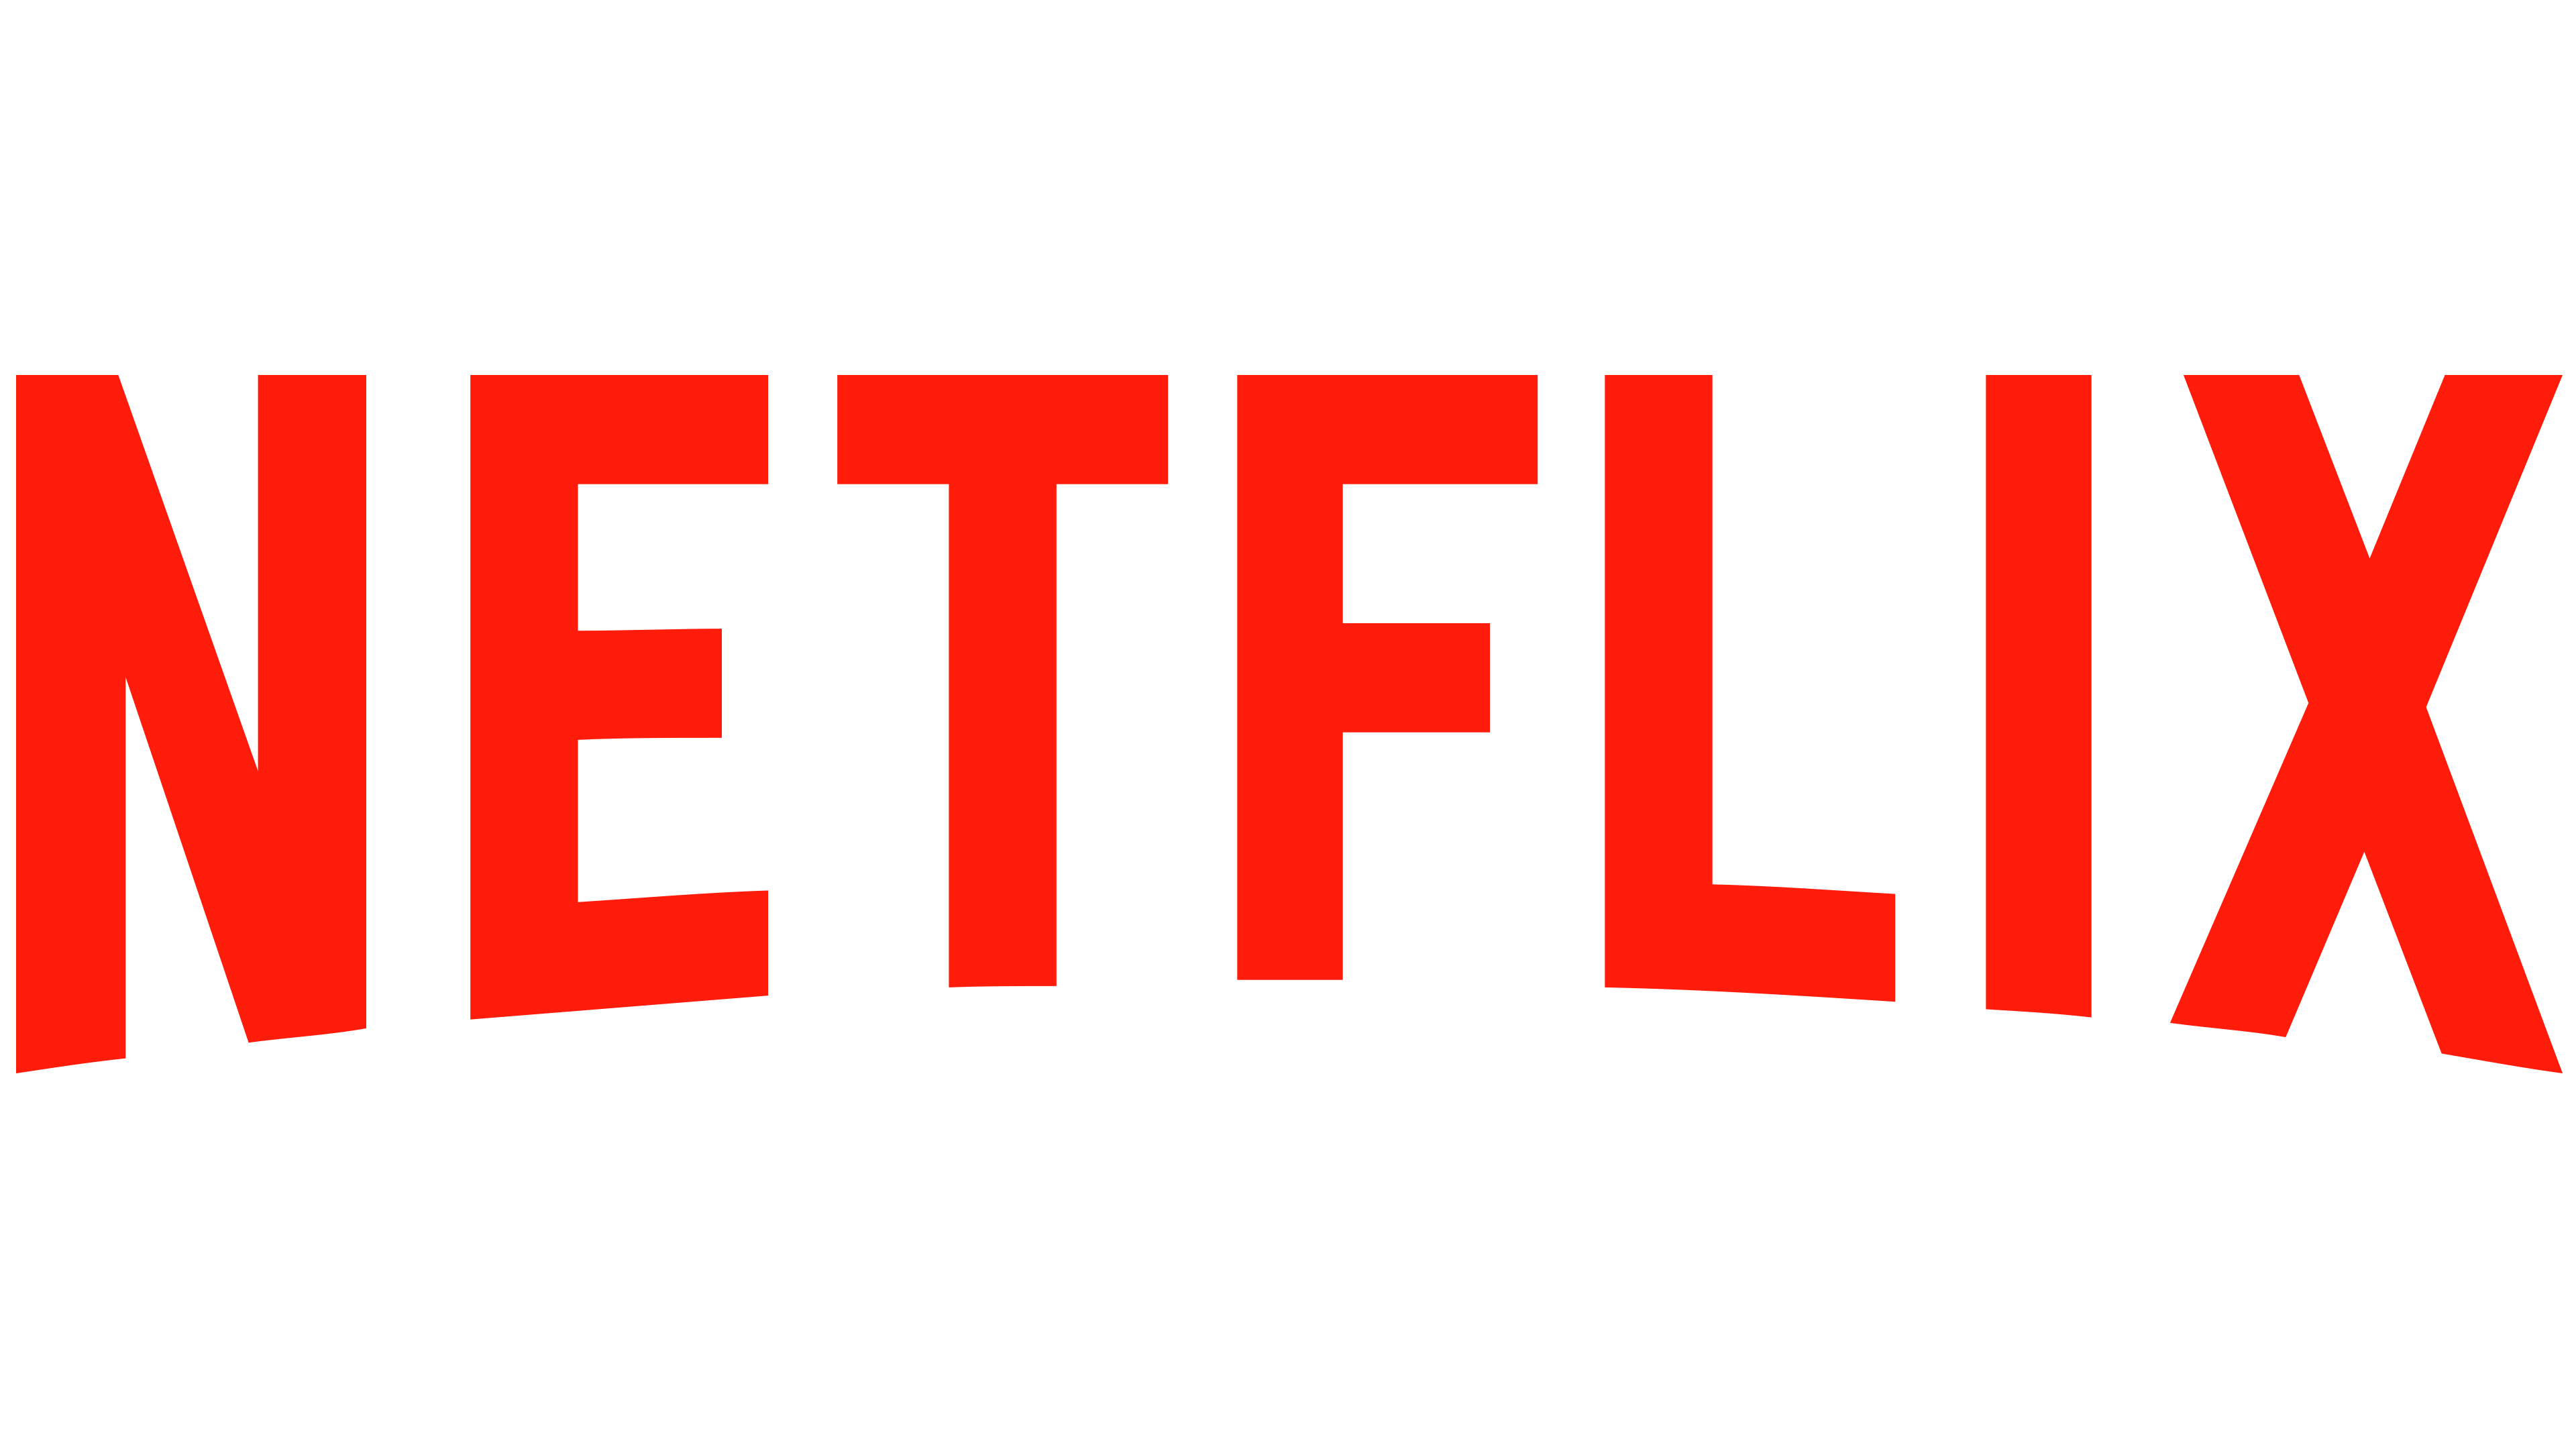 Home - image Netflix_logo_PNG1 on https://excellenttalent.com